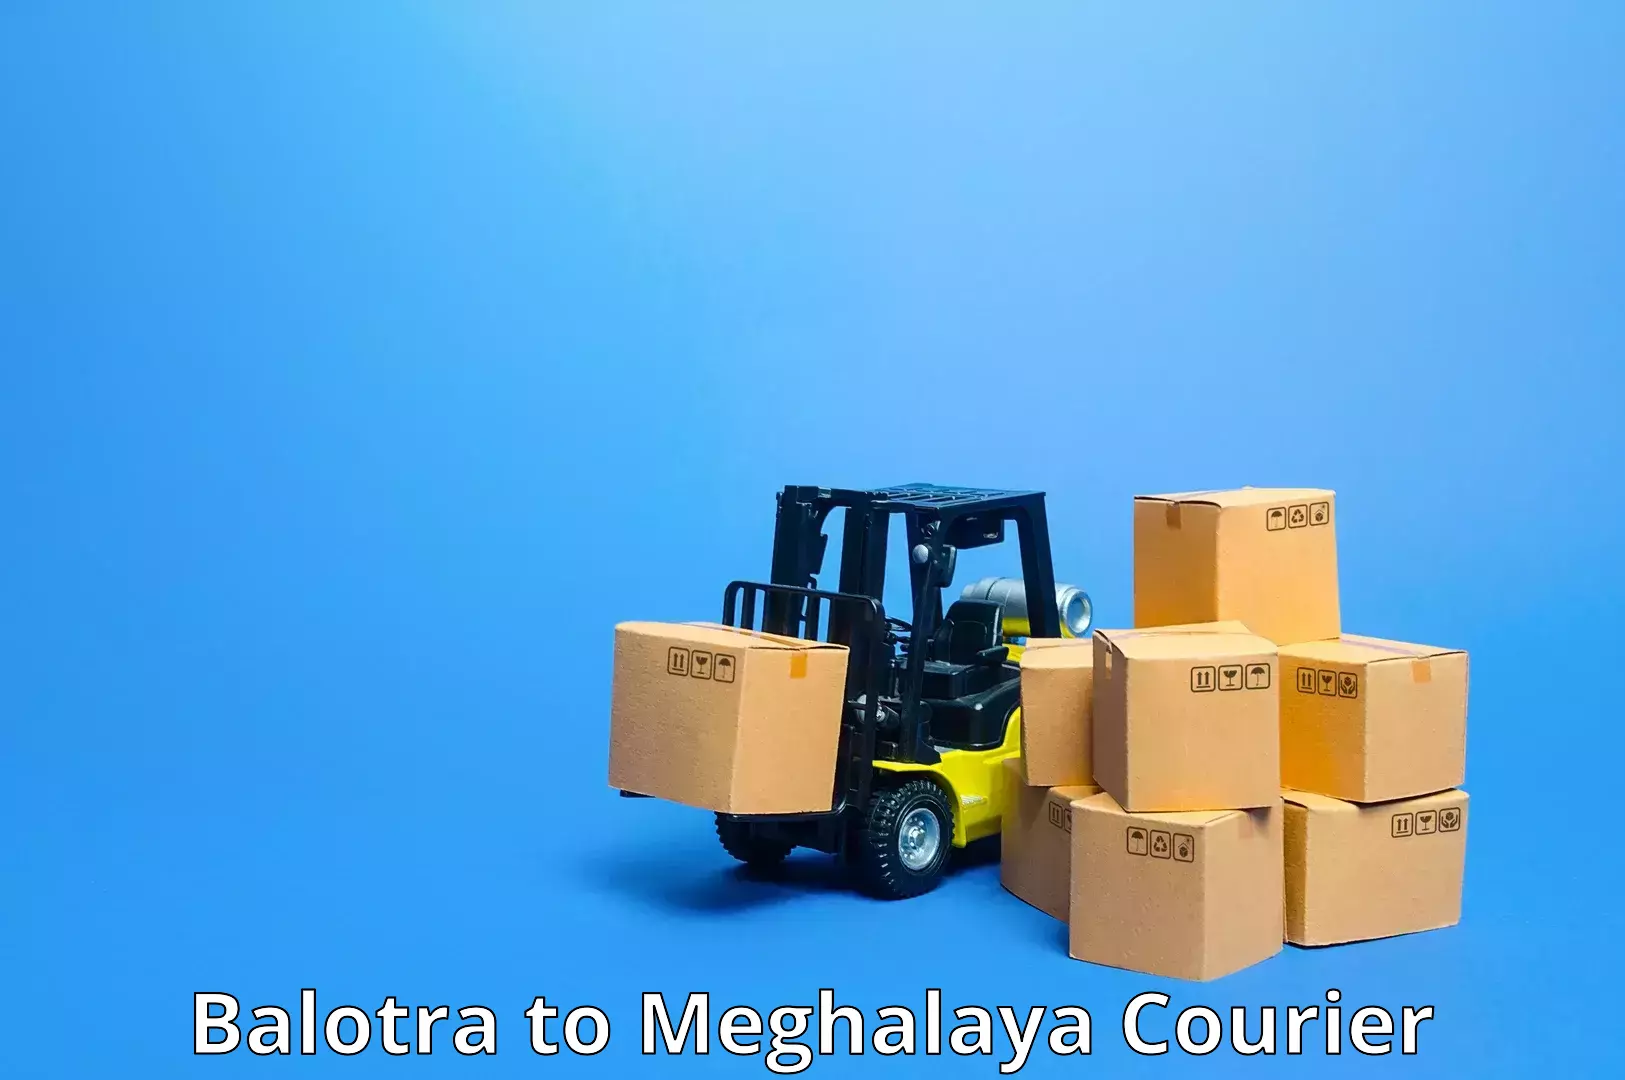 Comprehensive logistics Balotra to Umsaw